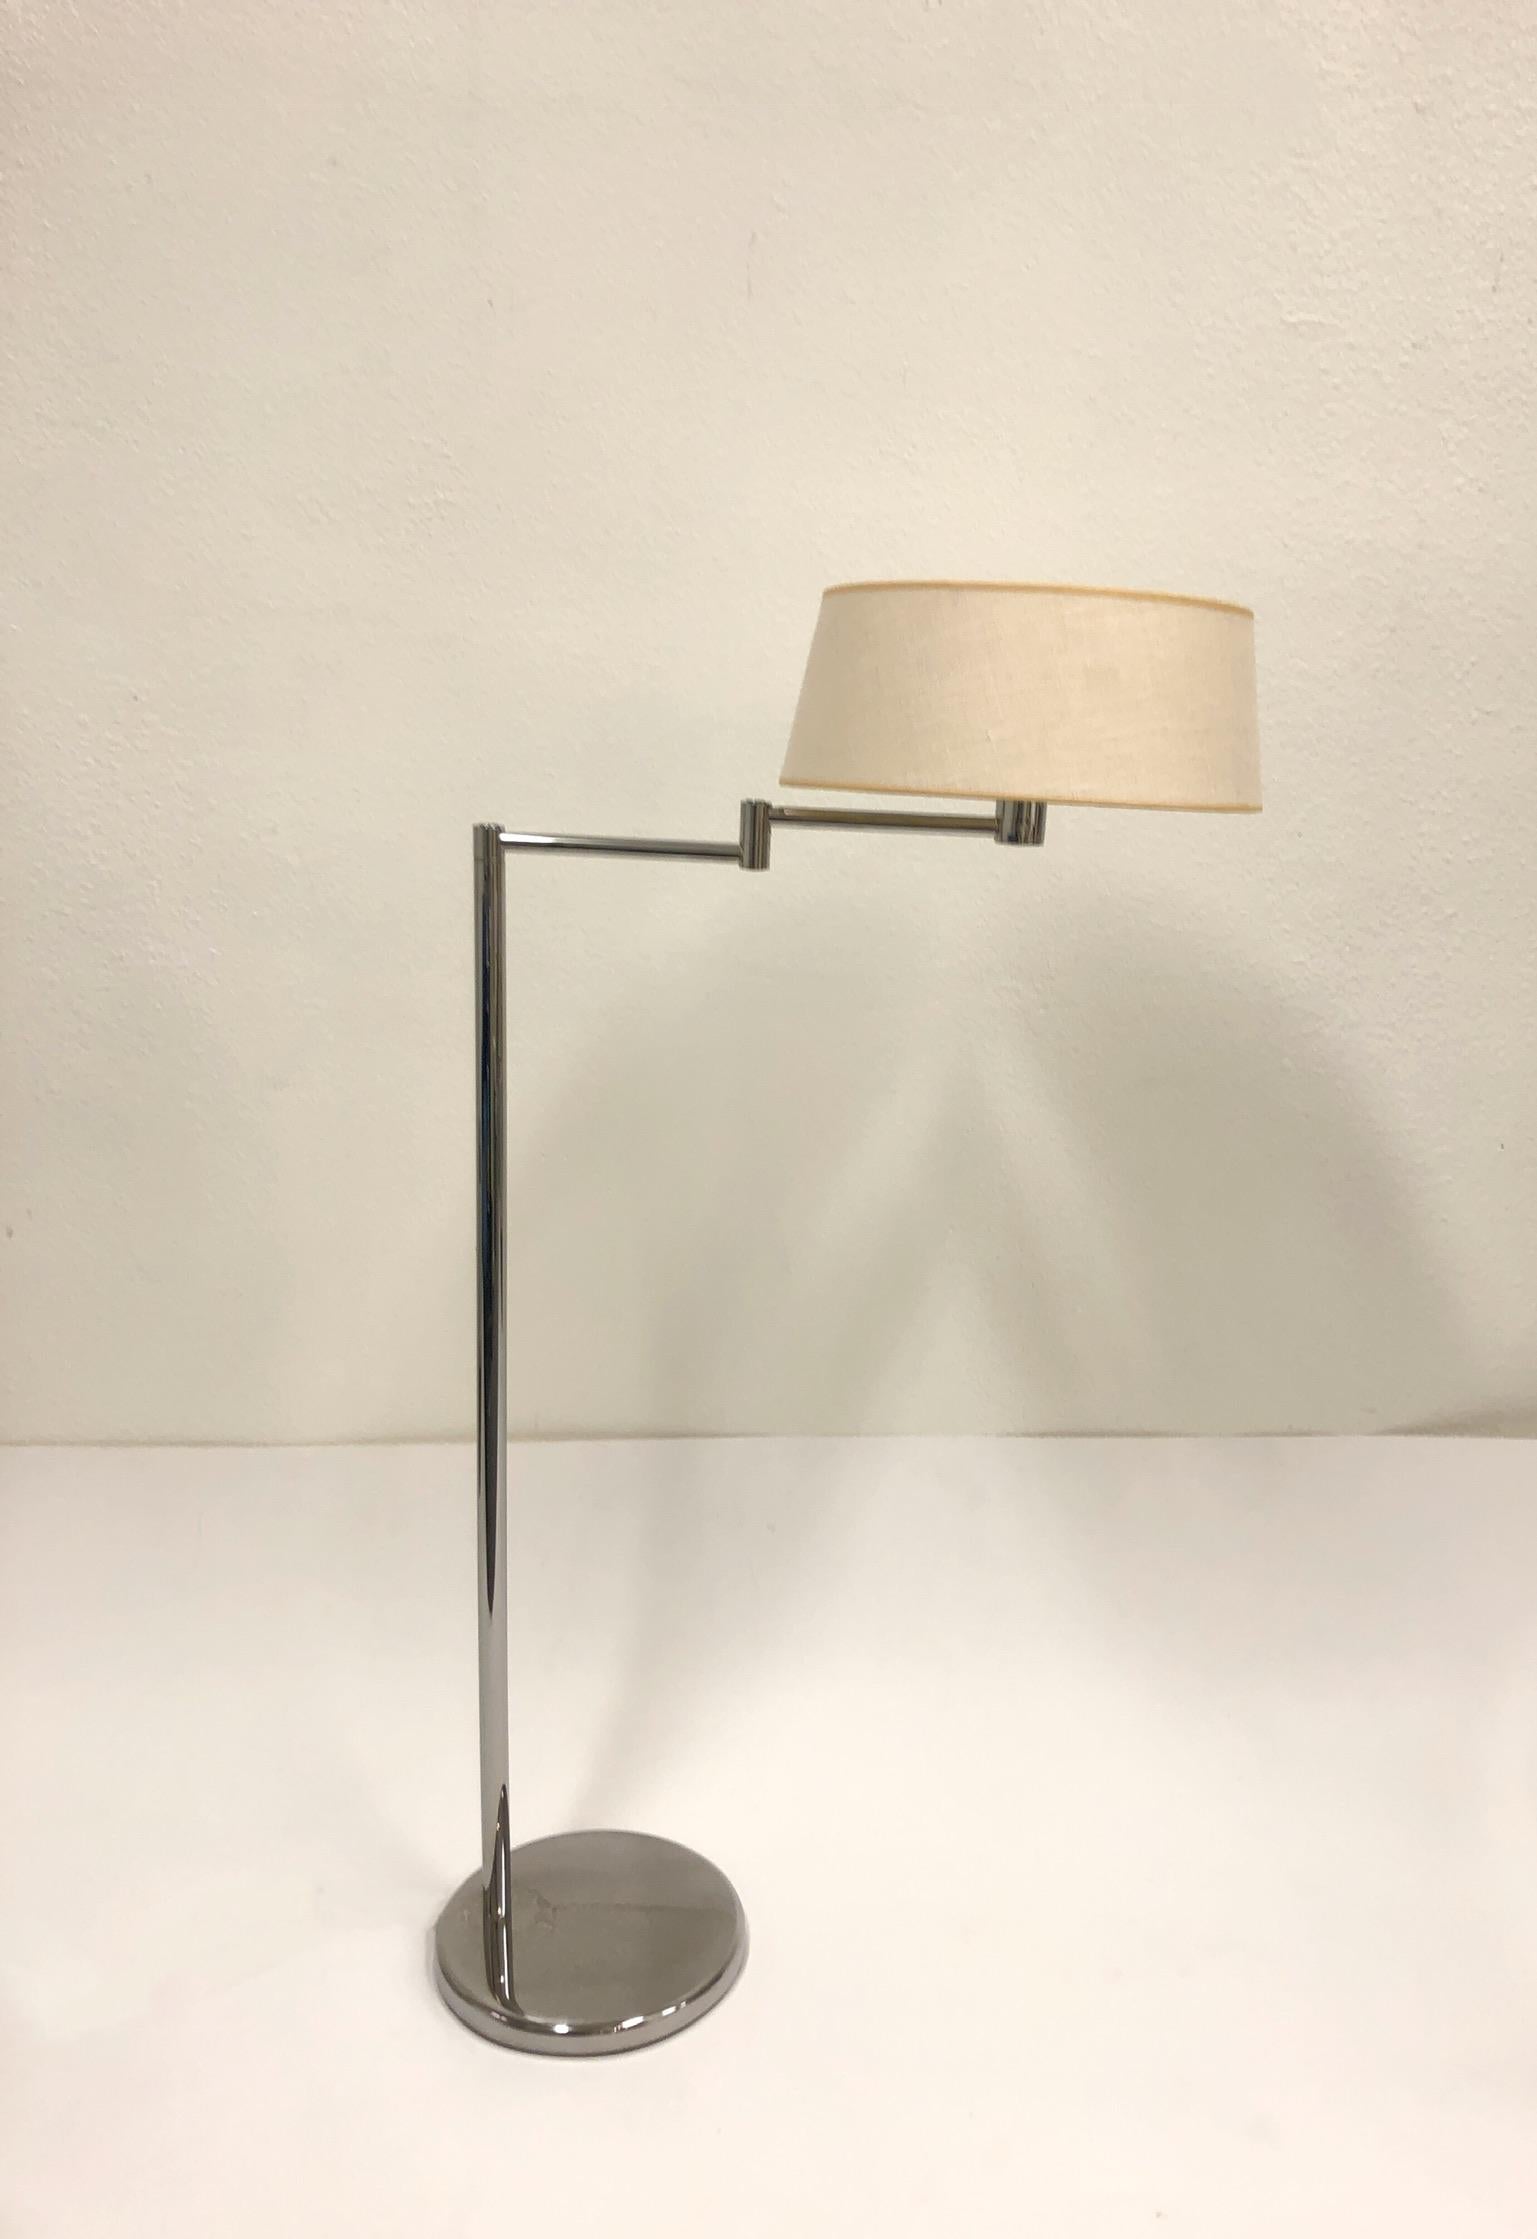 Un lampadaire réglable des années 1970 en chrome poli avec un abat-jour en lin vanille par Walter Von Nessen pour Nessen Studios. La lampe a un bras oscillant et se lève et se baisse. Nouvellement recâblé. 
Dimensions : 47.25